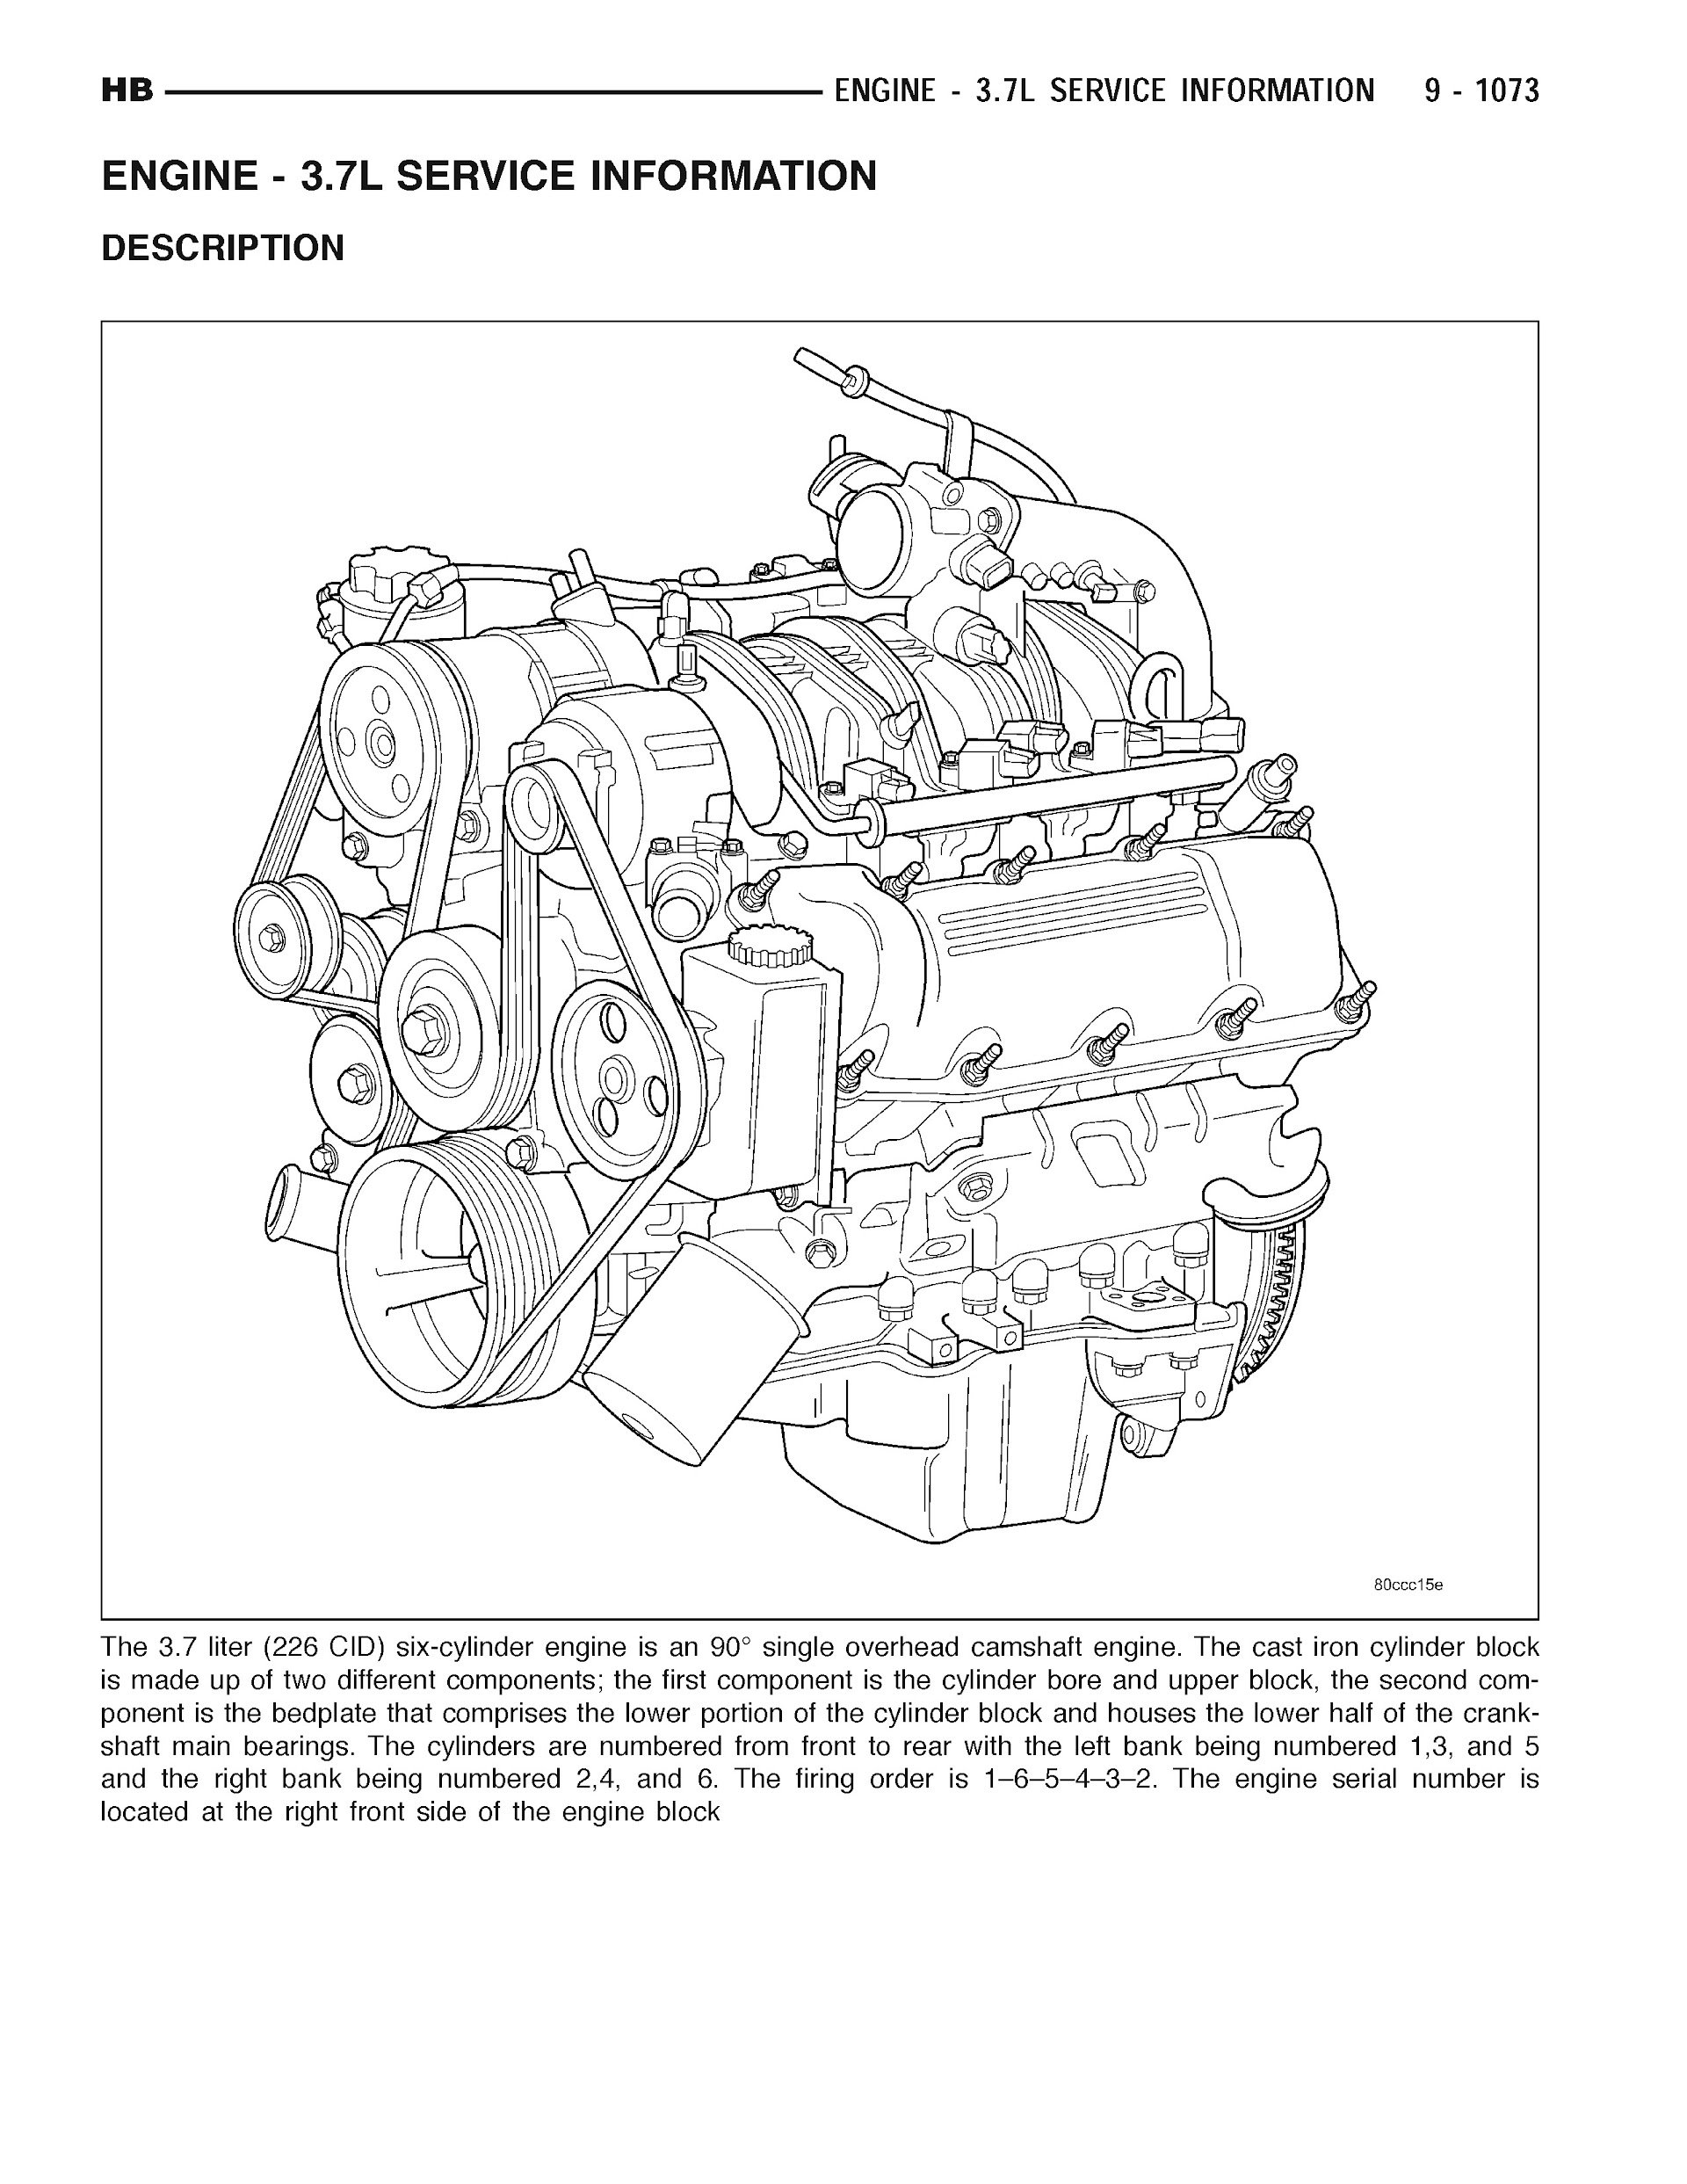 2005 Dodge Durango Repair Manual